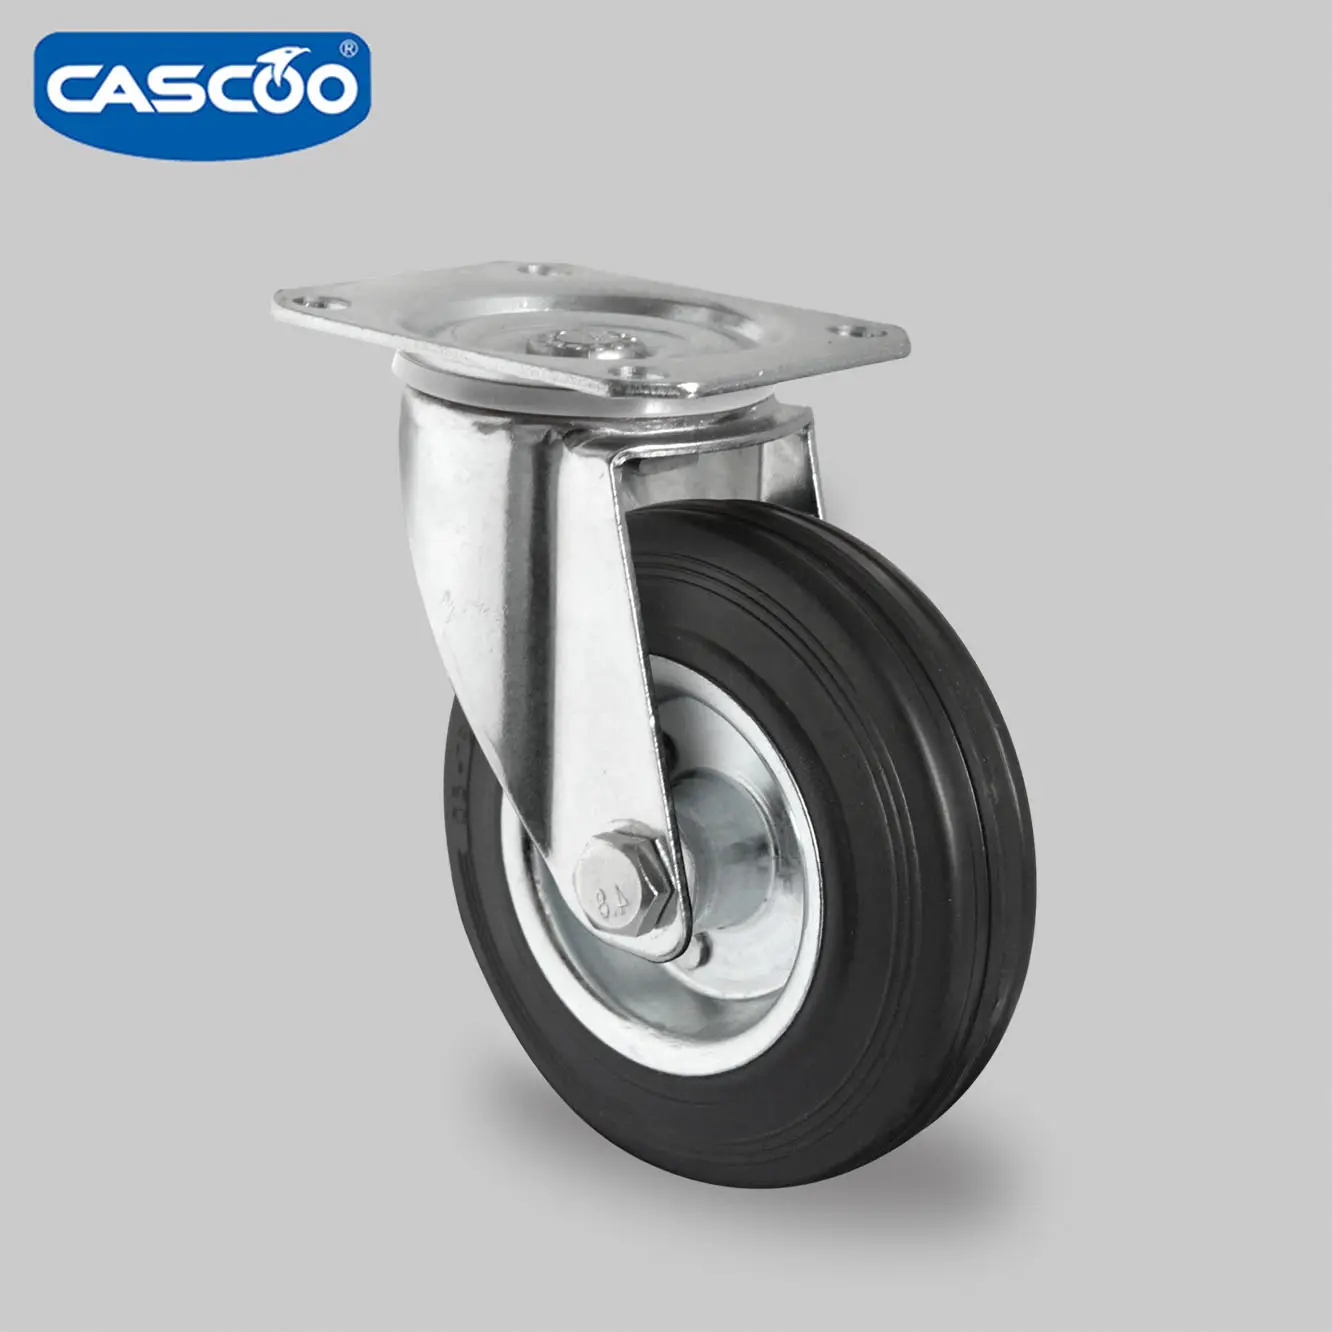 CASCOO – roues de chariot de 6 pouces de 160mm, roulettes allemandes en acier industriel